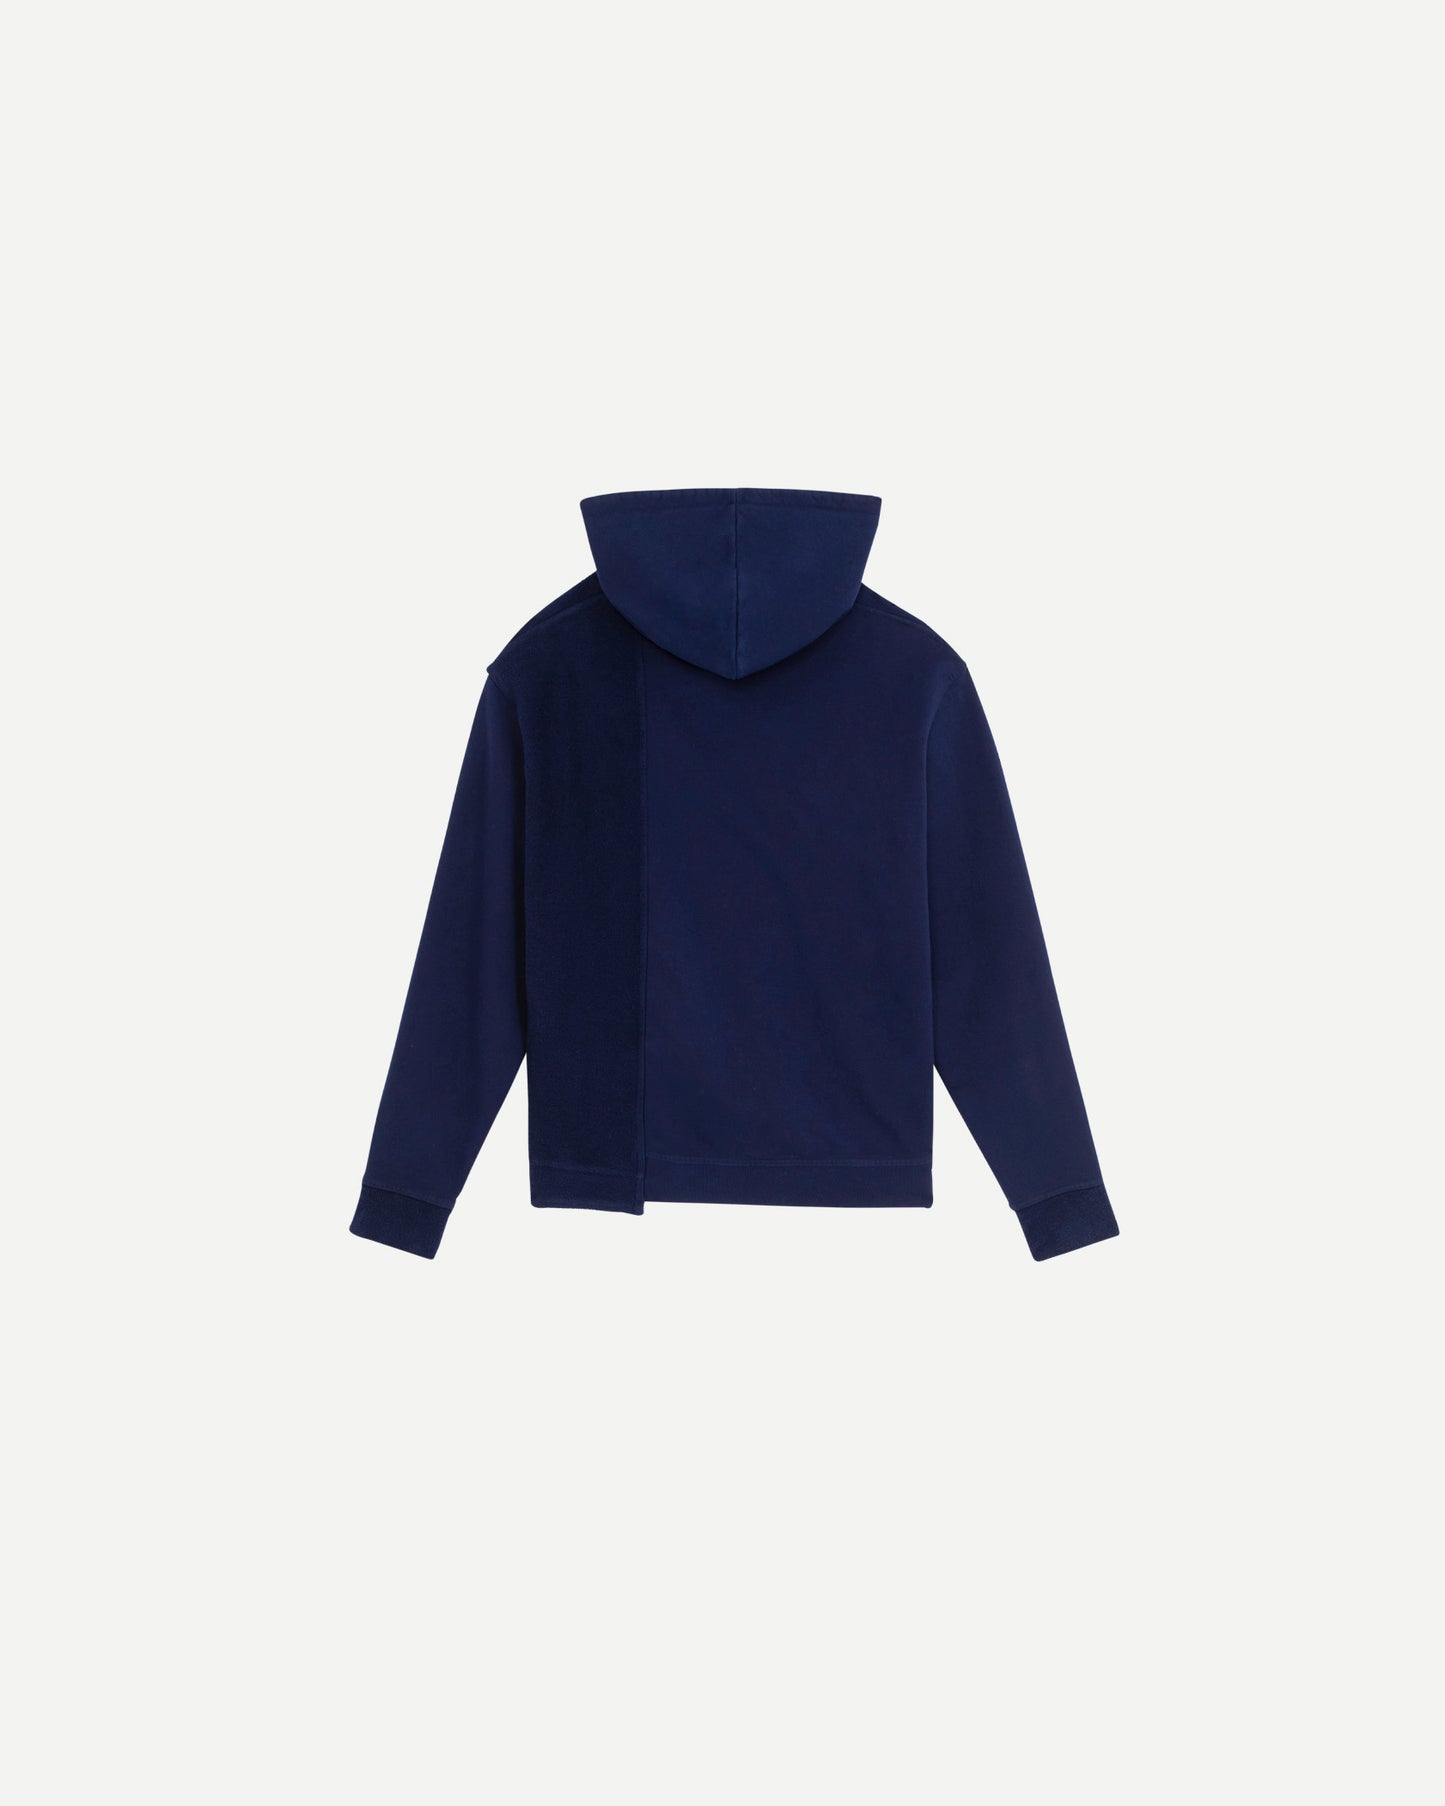 Hoodie de luxe pour homme Erevan, découpe bi-matière, poche centrale et capuche, en jersey de coton, fabriquée en france